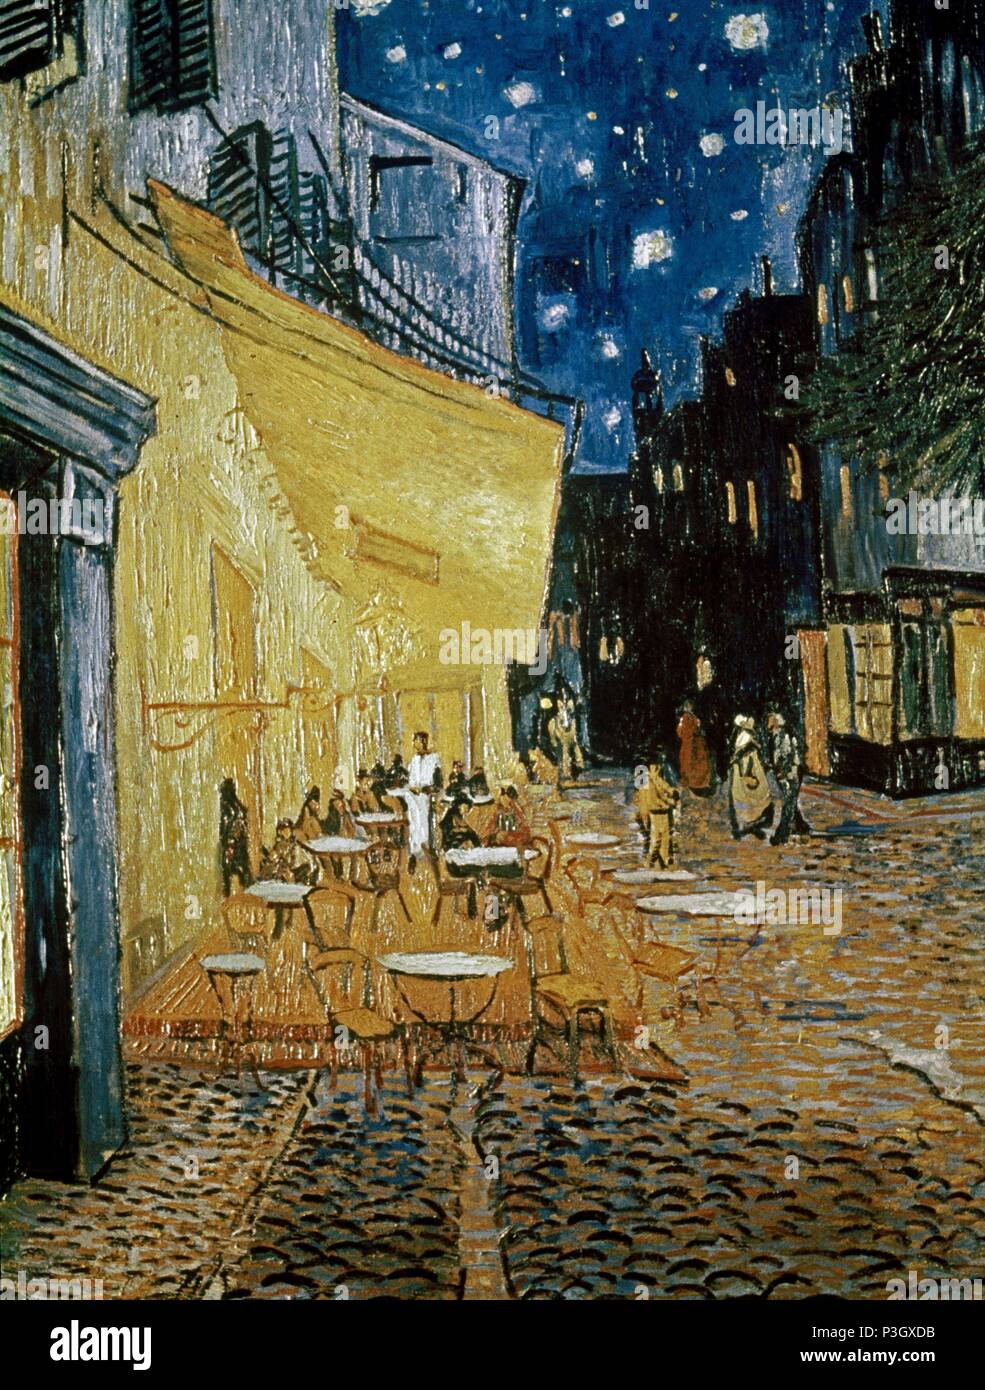 Niederländische Schule. Cafe Terrasse bei Nacht. 1888. Öl auf Leinwand (81 x 65 cm). Kröller-Müller Museum, Otterlo. Autor: Vincent van Gogh (1853-1890). Lage: MUSEO KROLLER-MULLER, OTTERLO, HOLANDA. Stockfoto